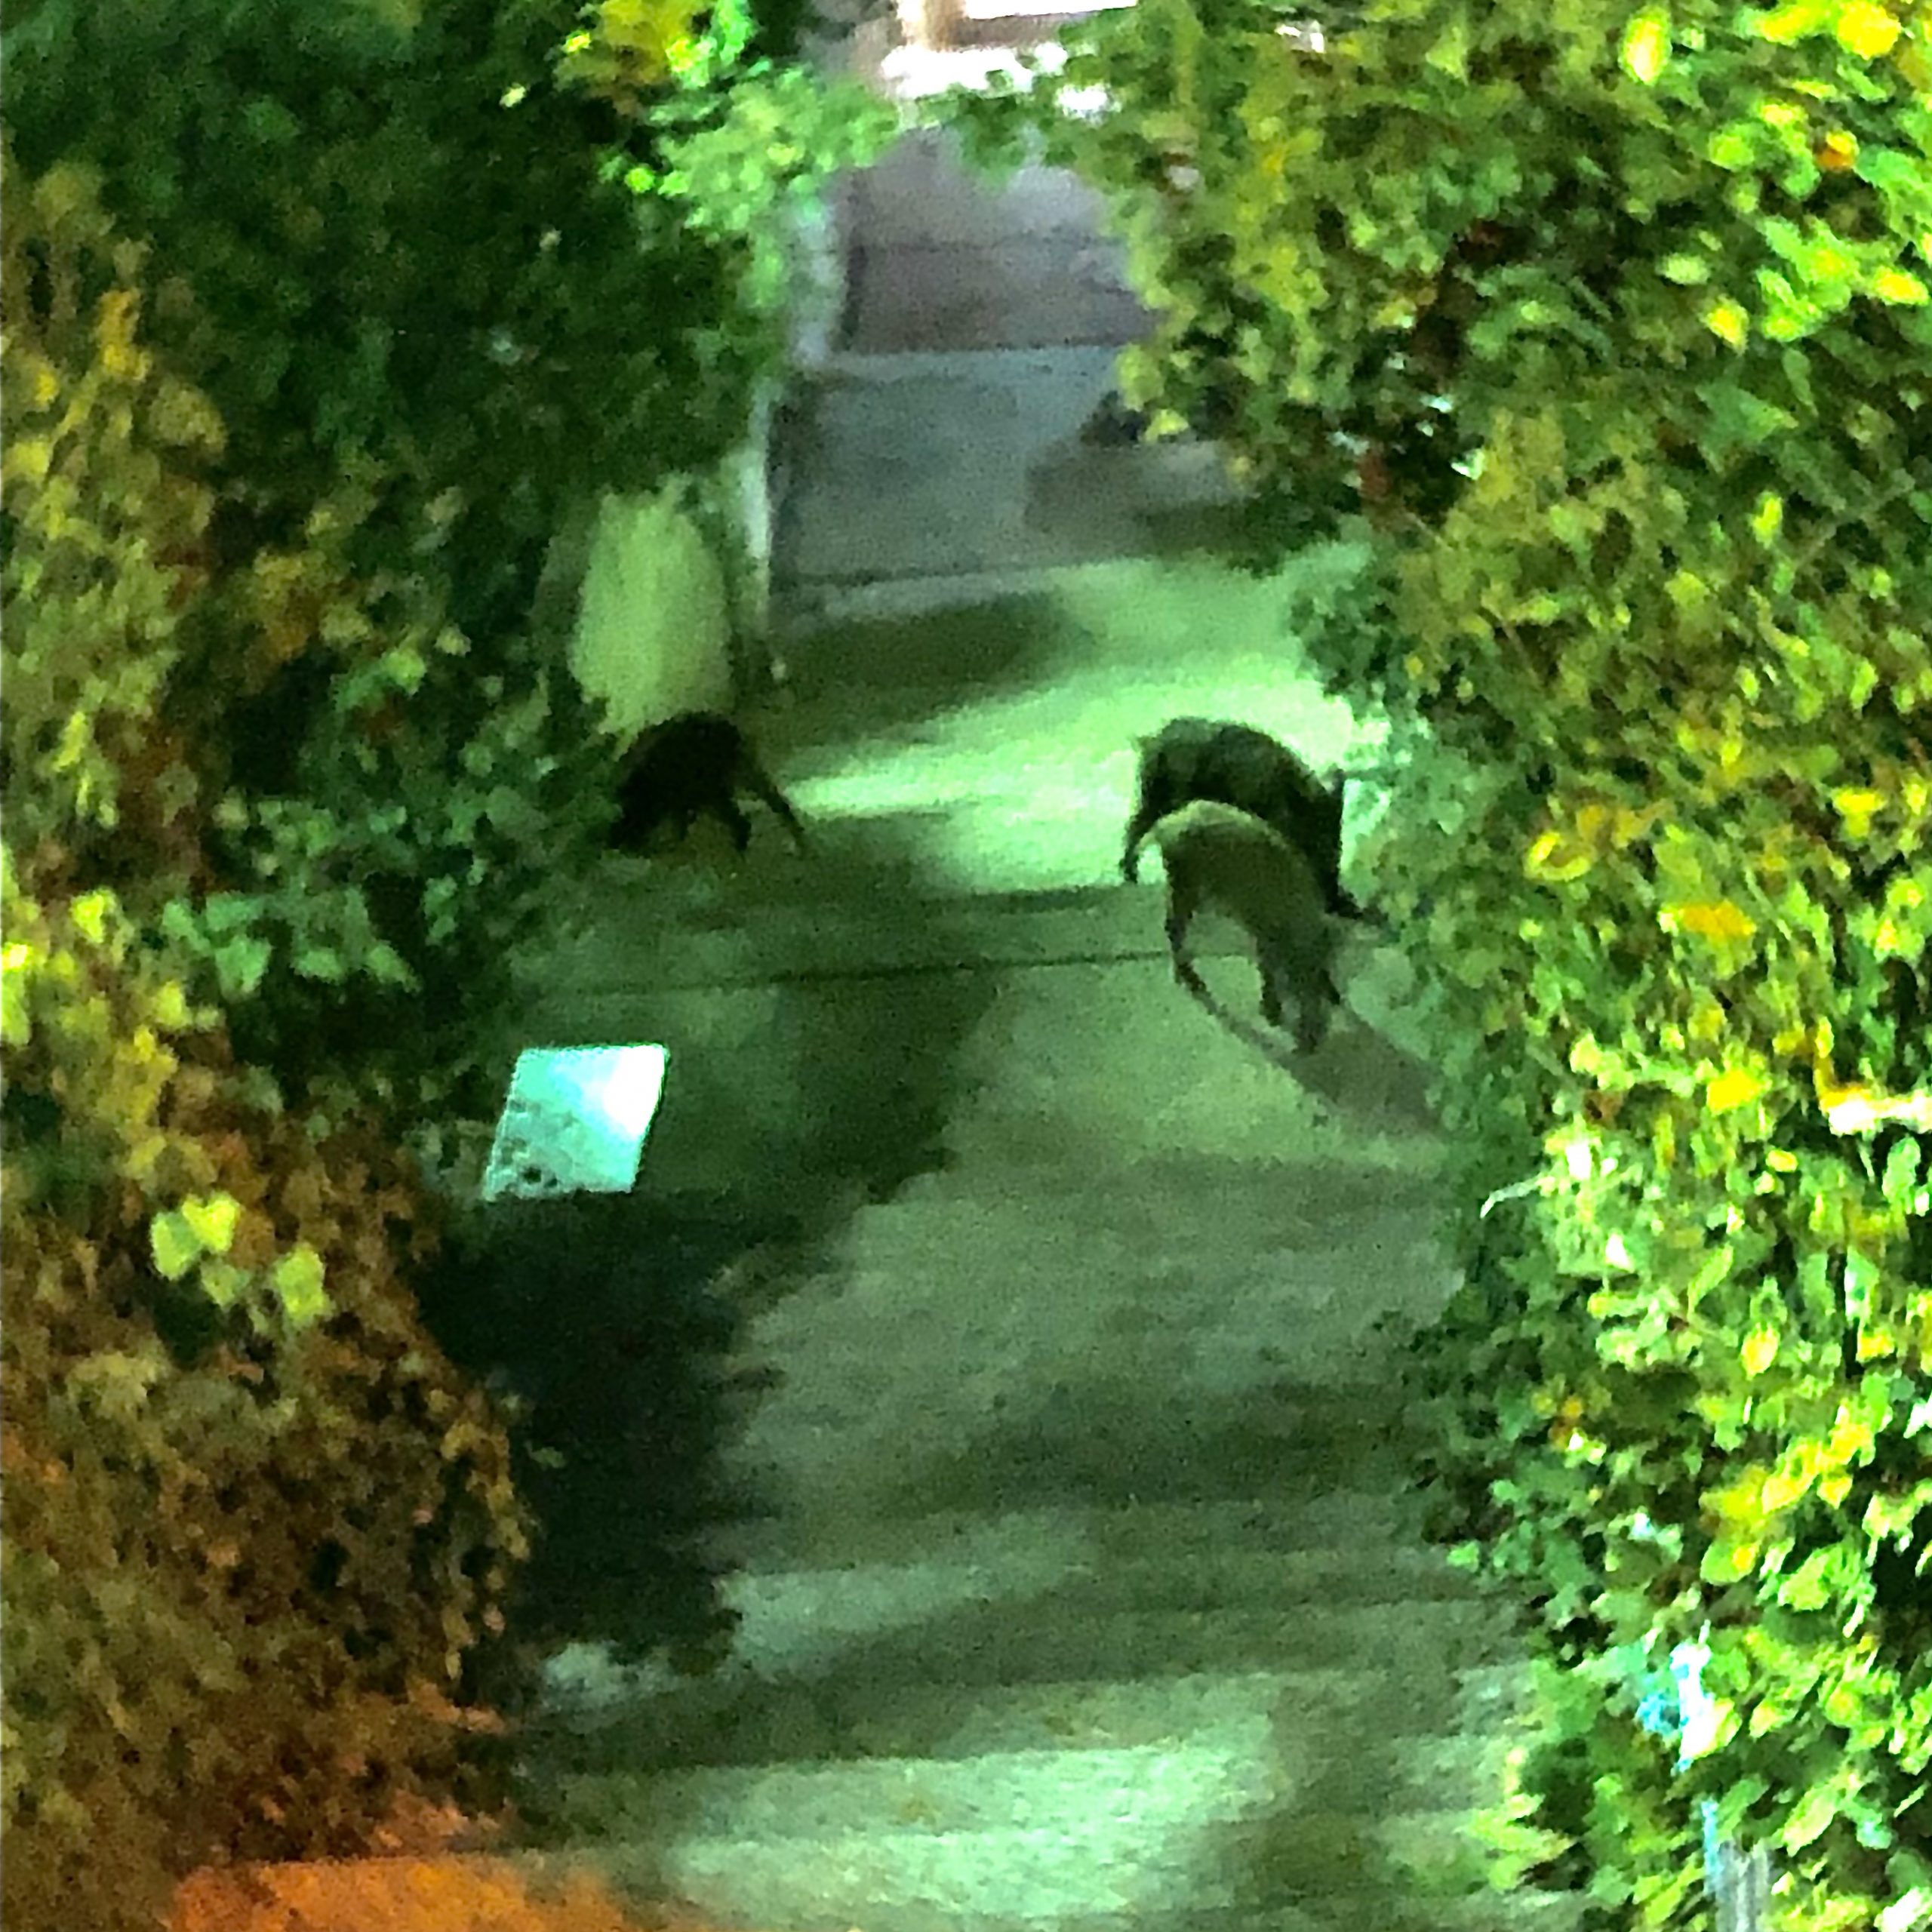 Wild hogs roaming Haifa streets